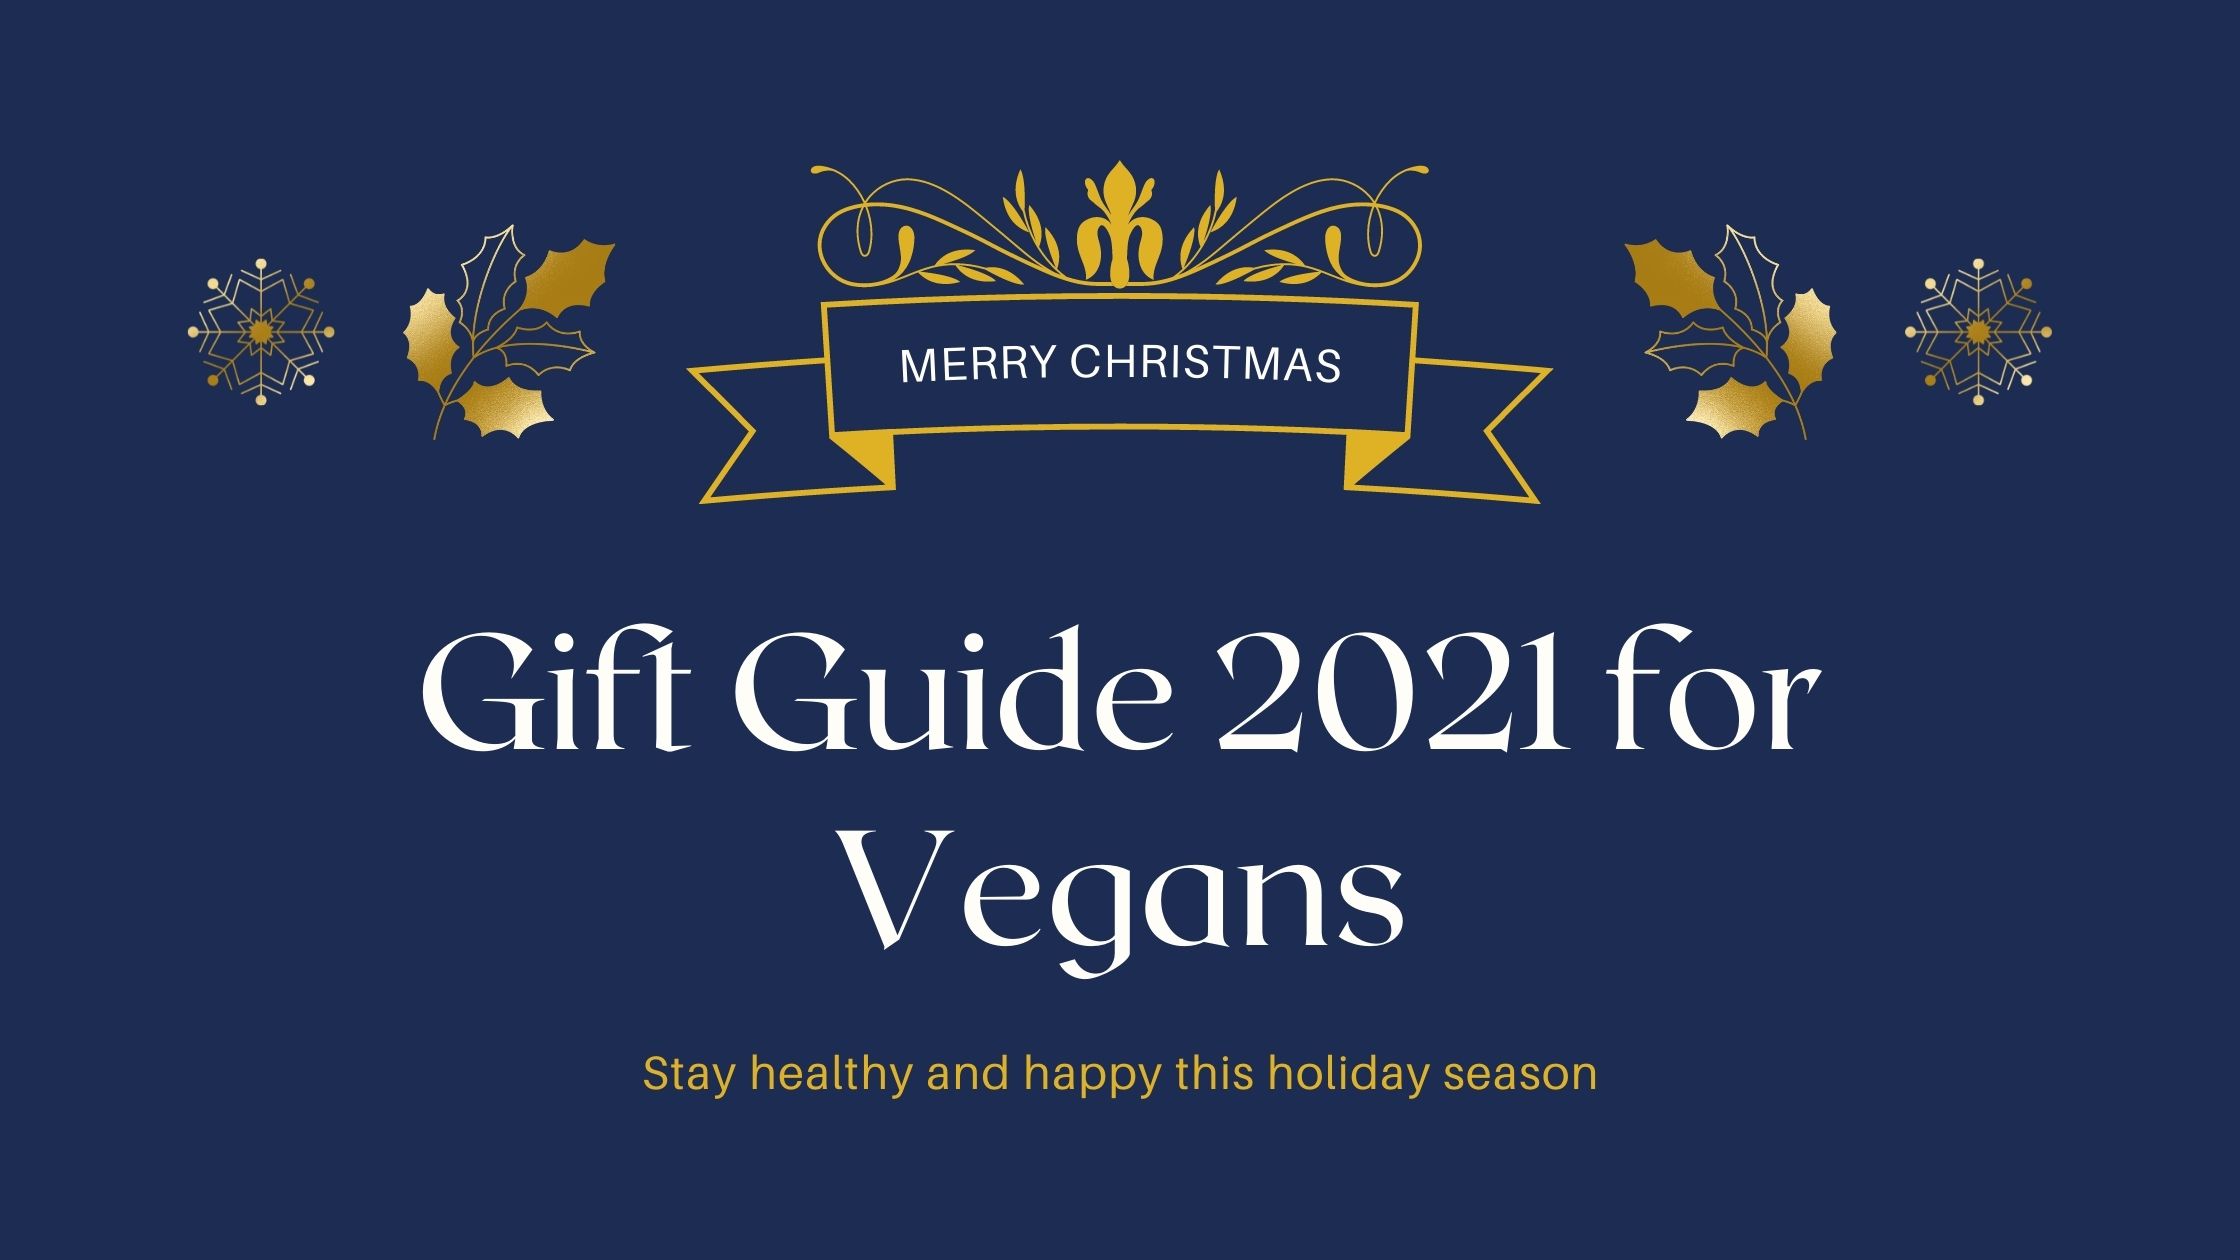 Gift Guide 2021 for Vegans